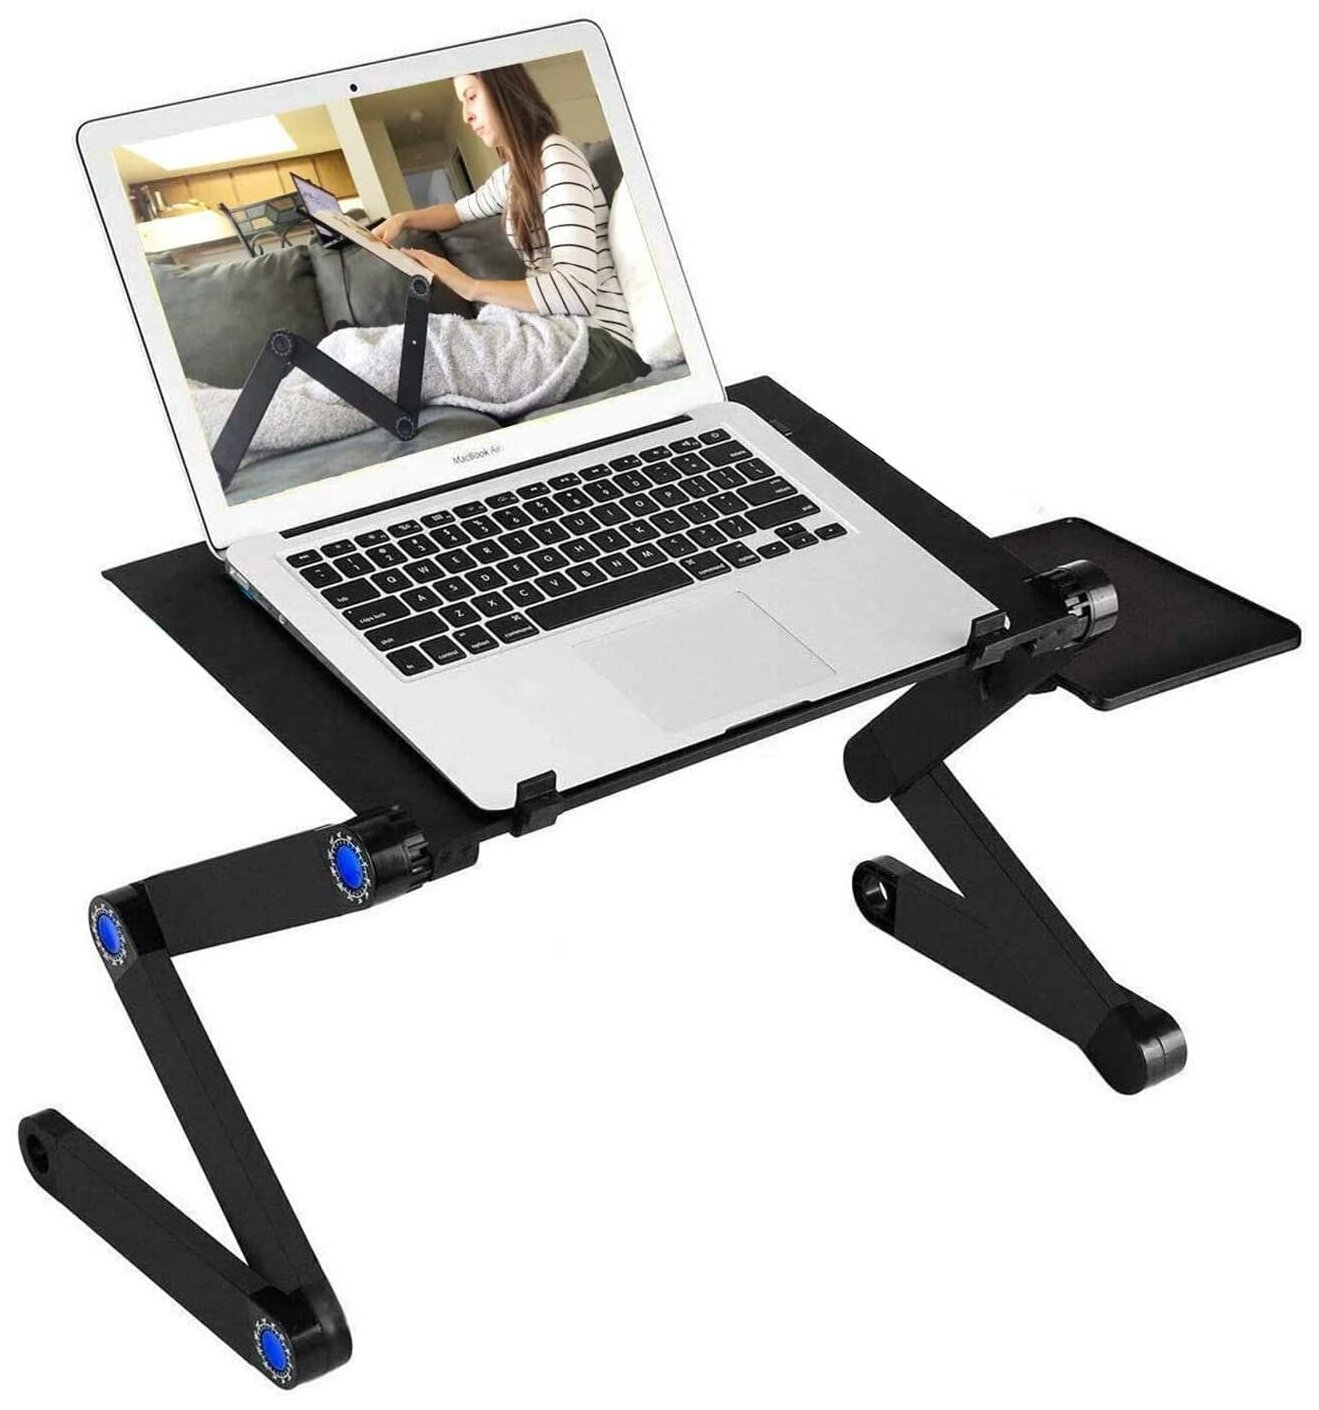 Складной стол трансформер для ноутбука SimpleShop с воздушным охлаждением и подставкой для мыши столик в кровать Laptop table